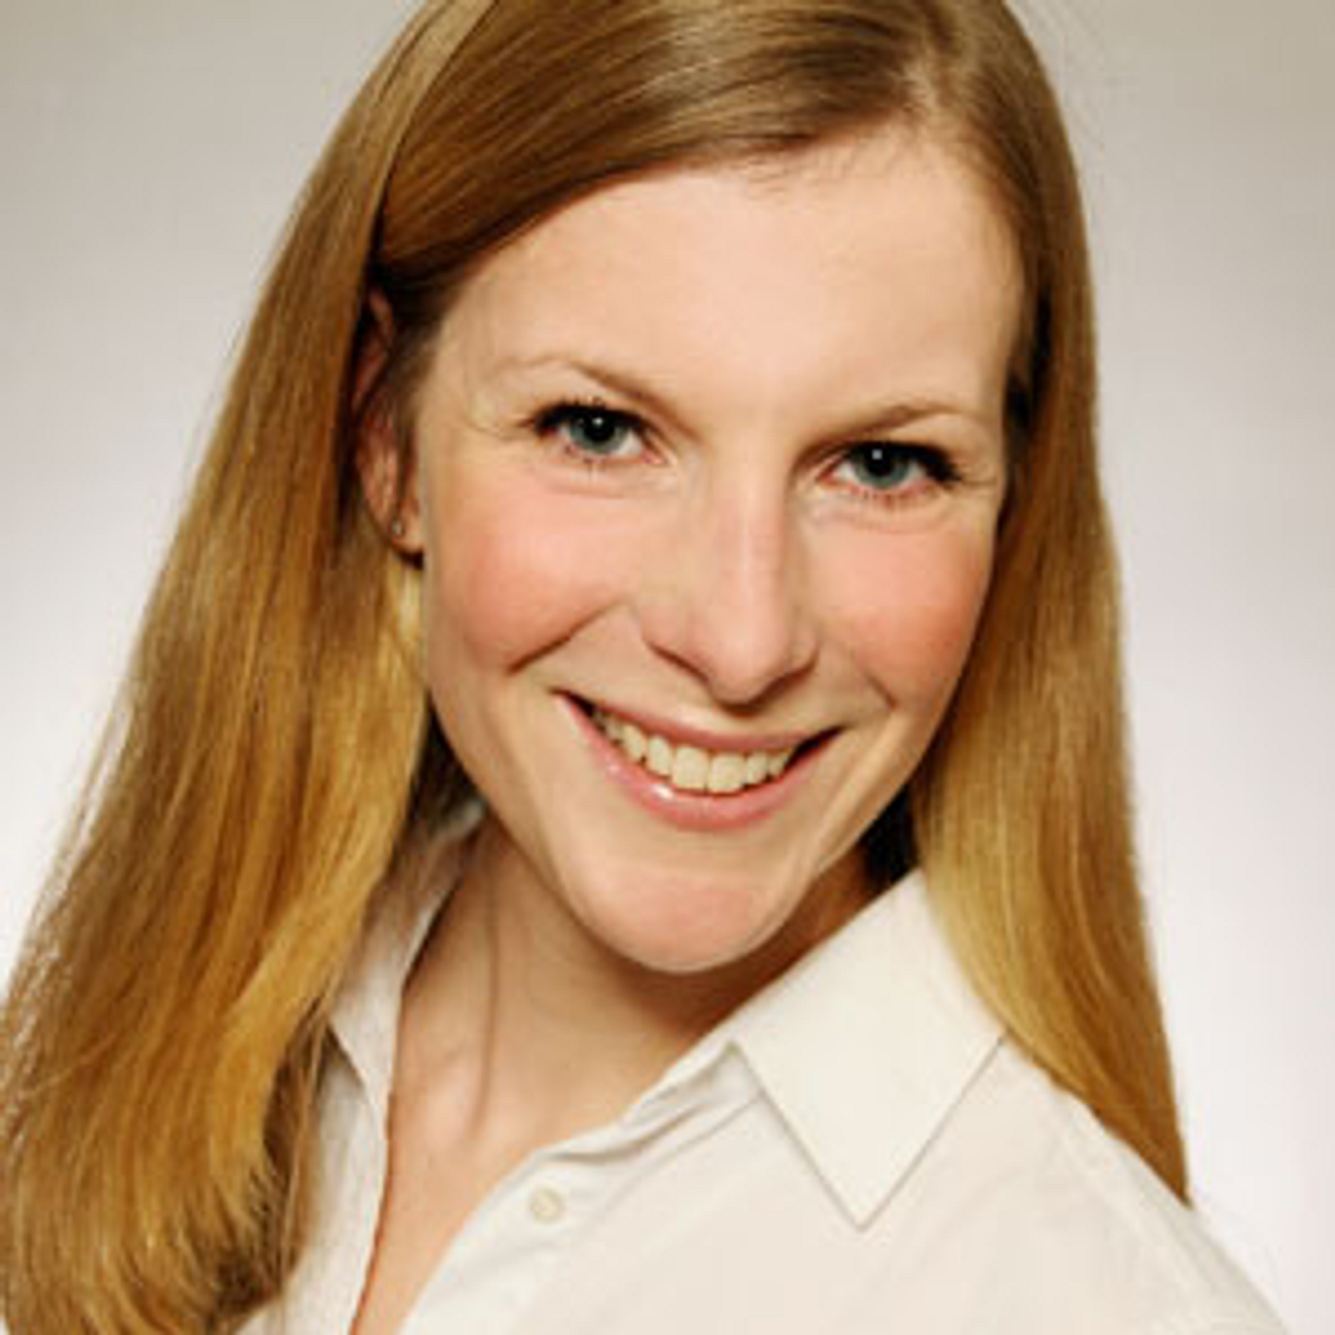 Kinderärztin Dr. Nadine Hess gibt hilfreiche Tipps zu Windpocken